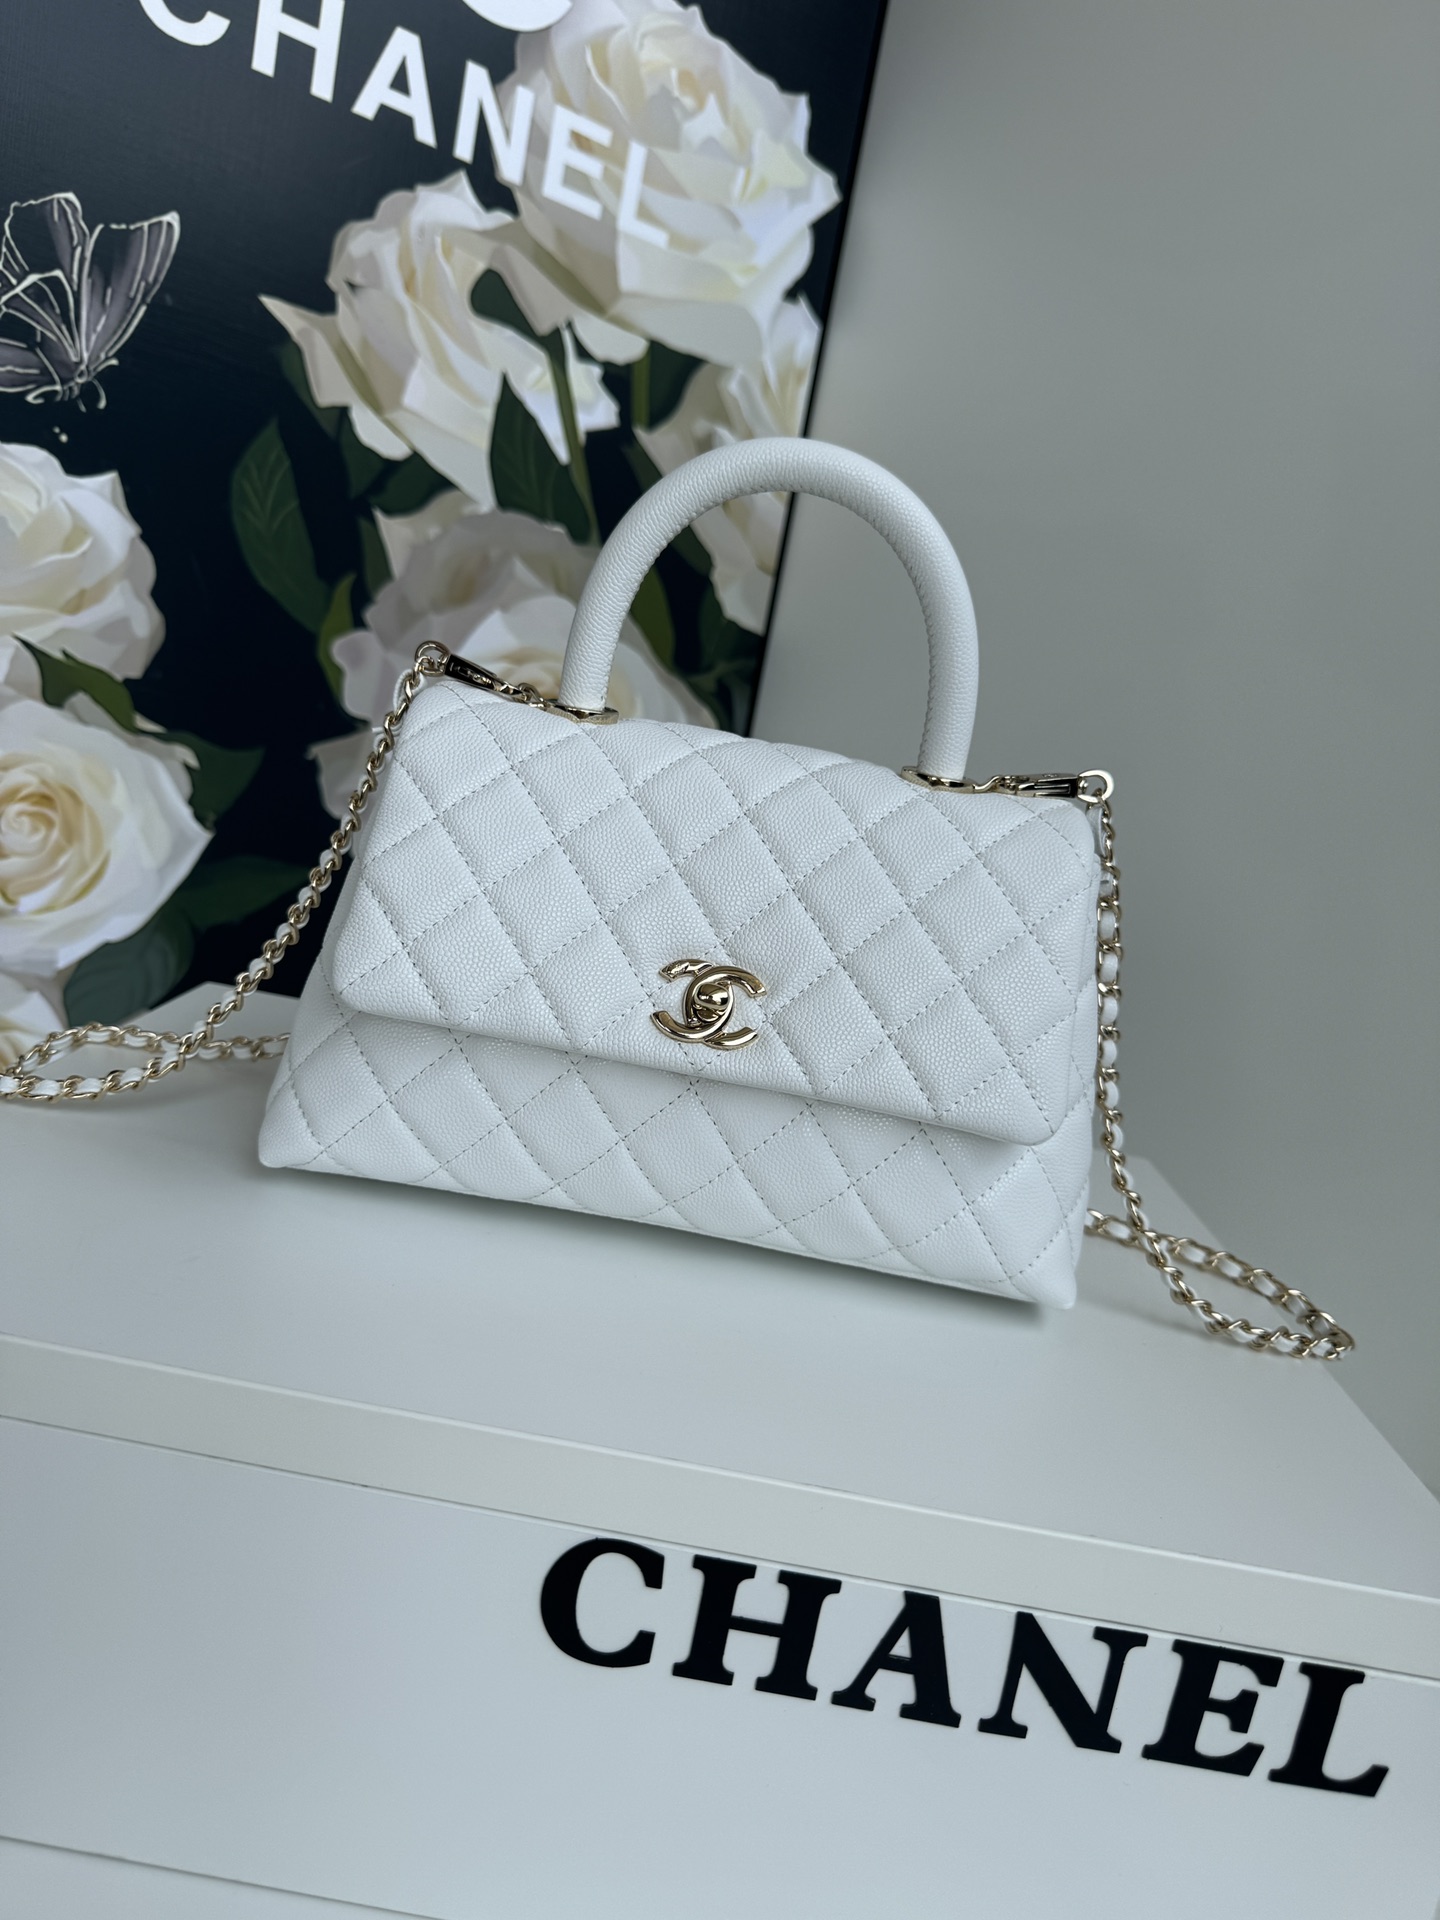 Réplique de classe AAA
 Chanel Classic Flap Bag AAA + qualité
 Or Cuir veau vache A92990